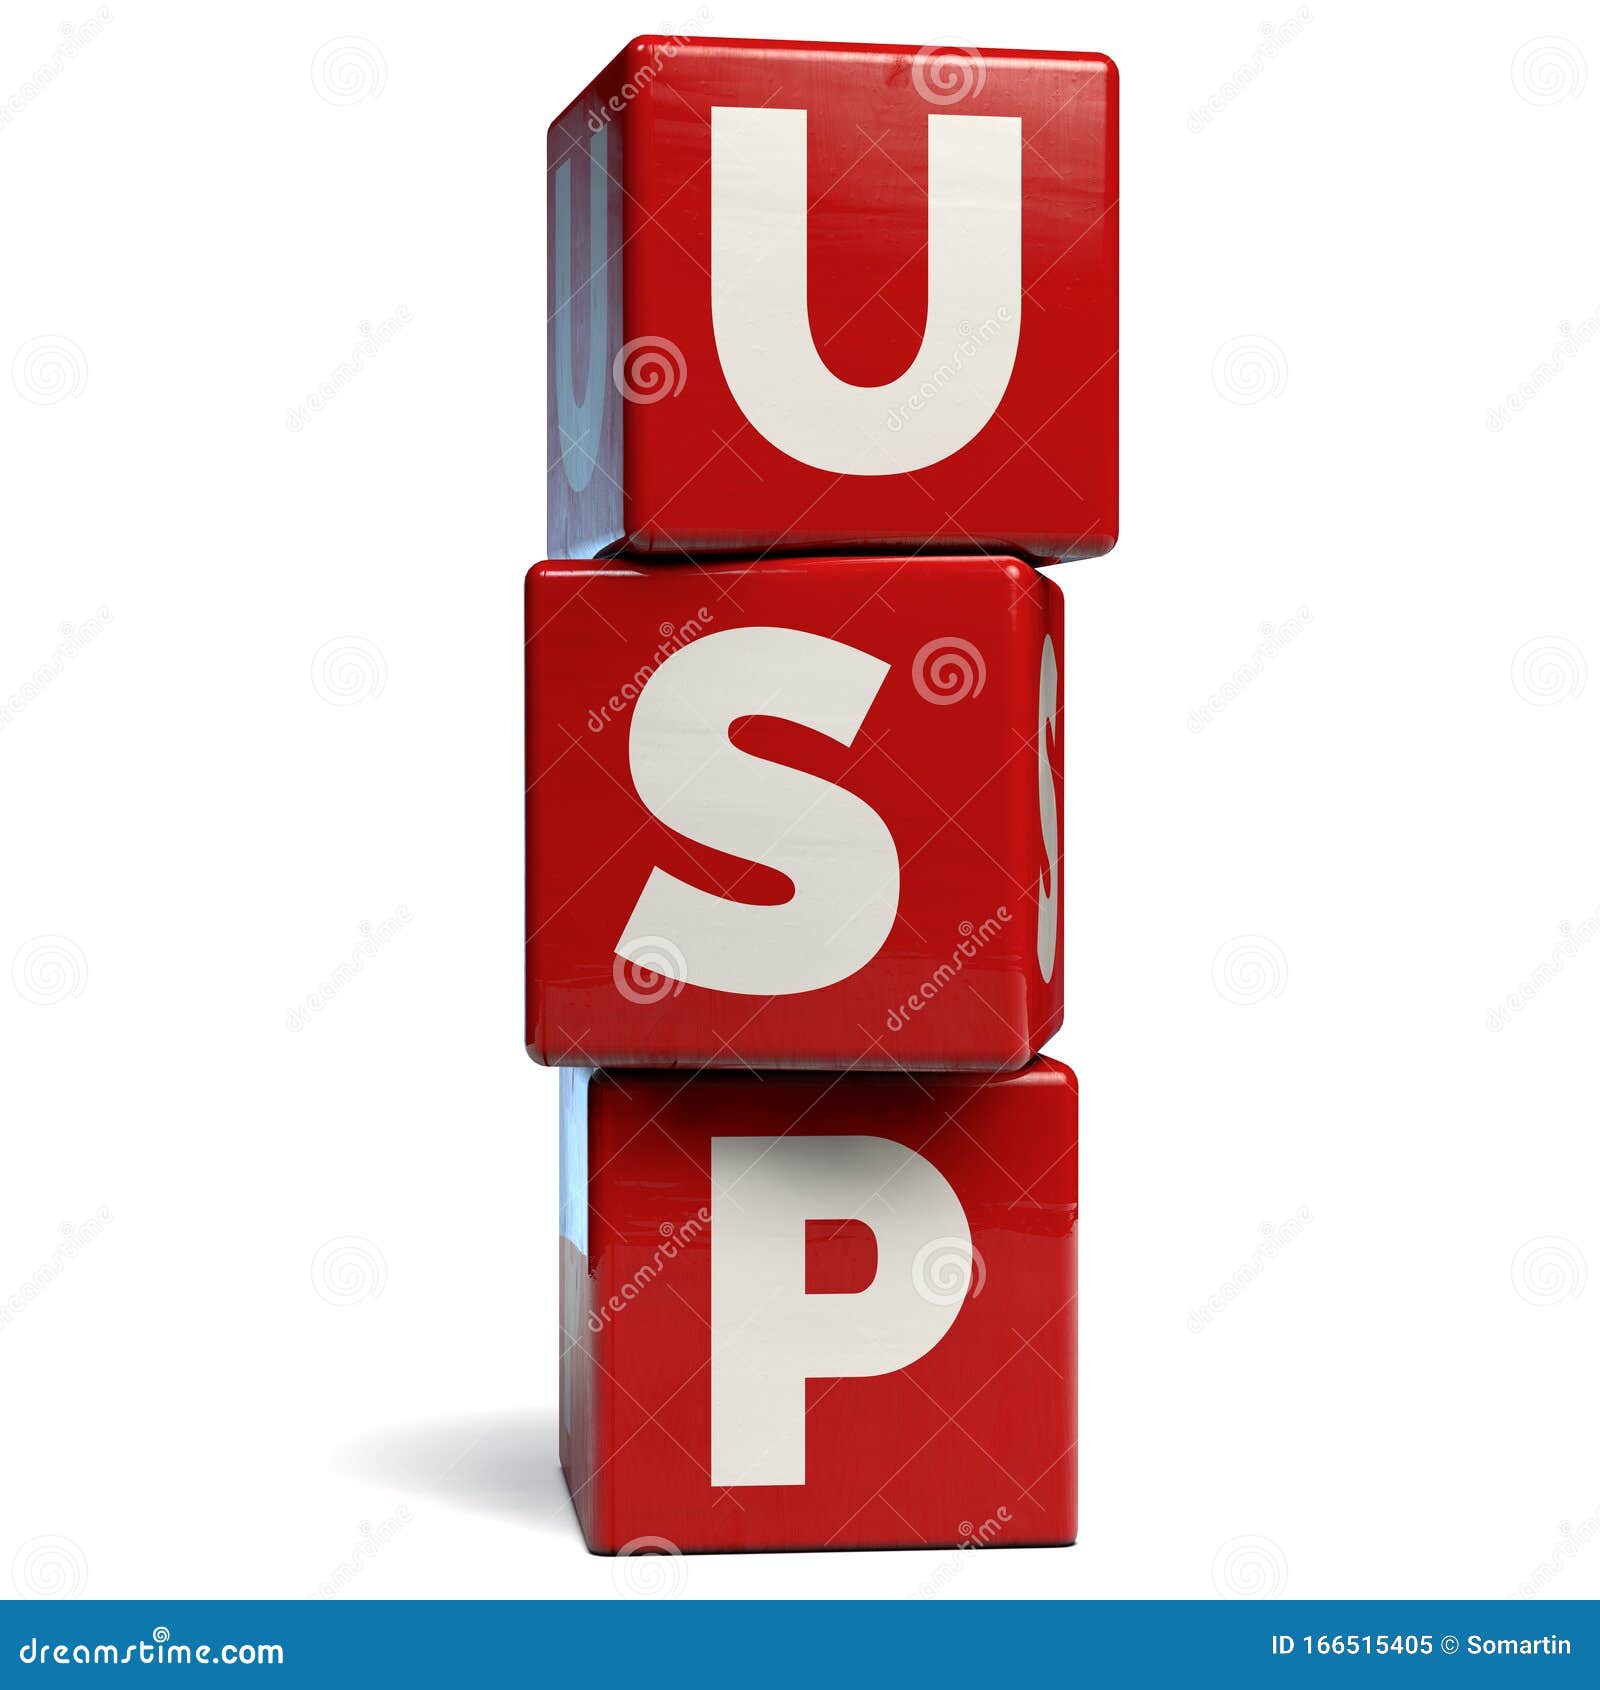 usp - unique selling proposition